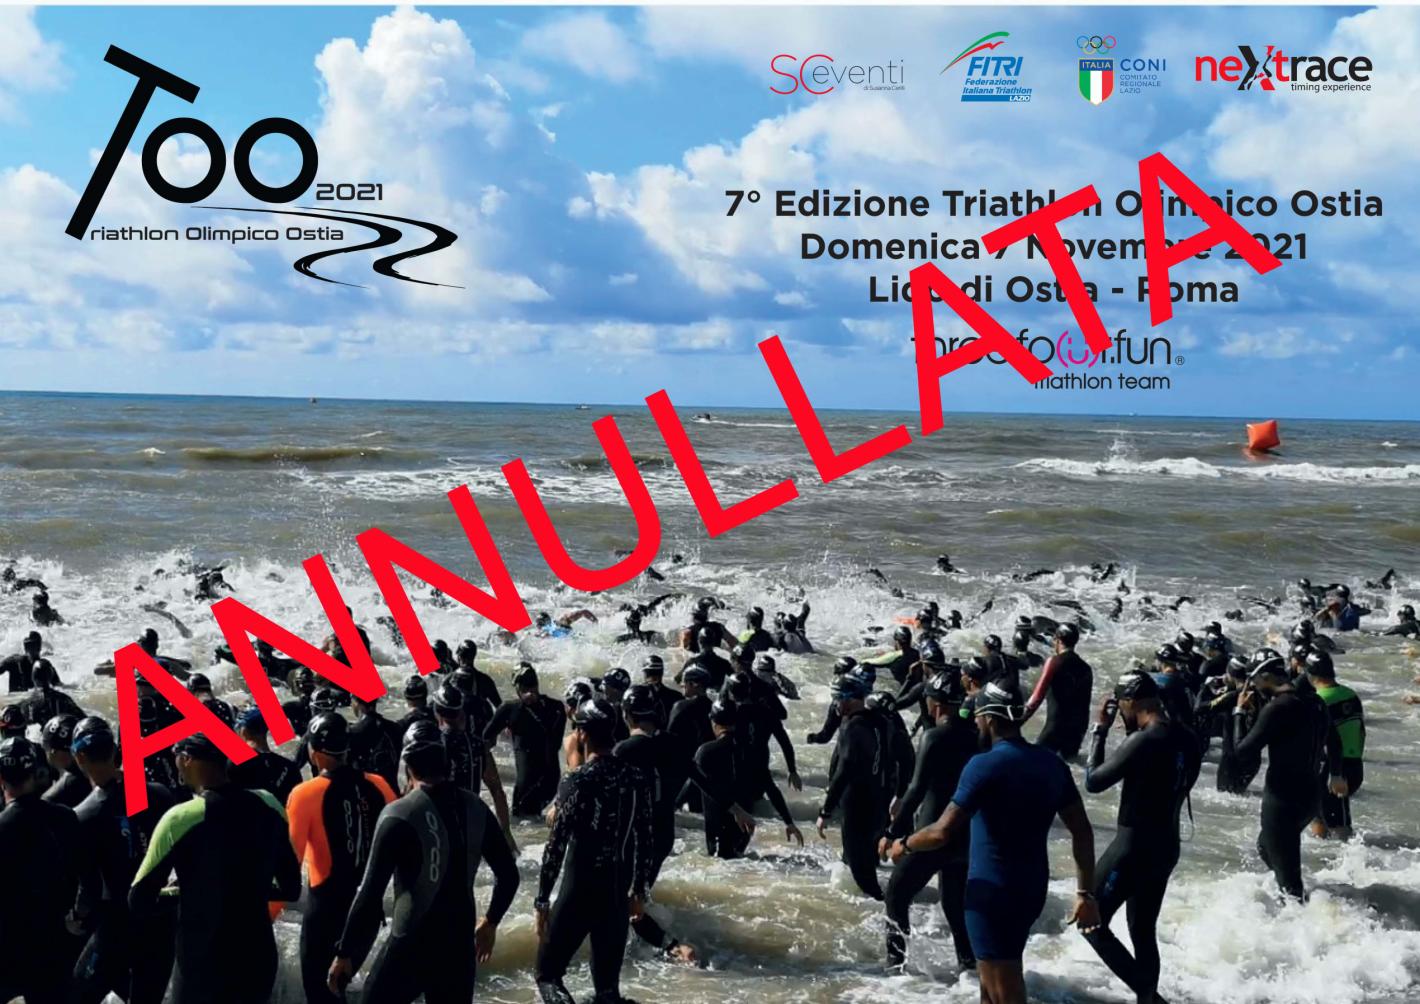 images/2021/Gare_ITALIA/Ostia_Triathlon_Olimpico/medium/ANNULLAMENTO_DEFINITIVO.jpg